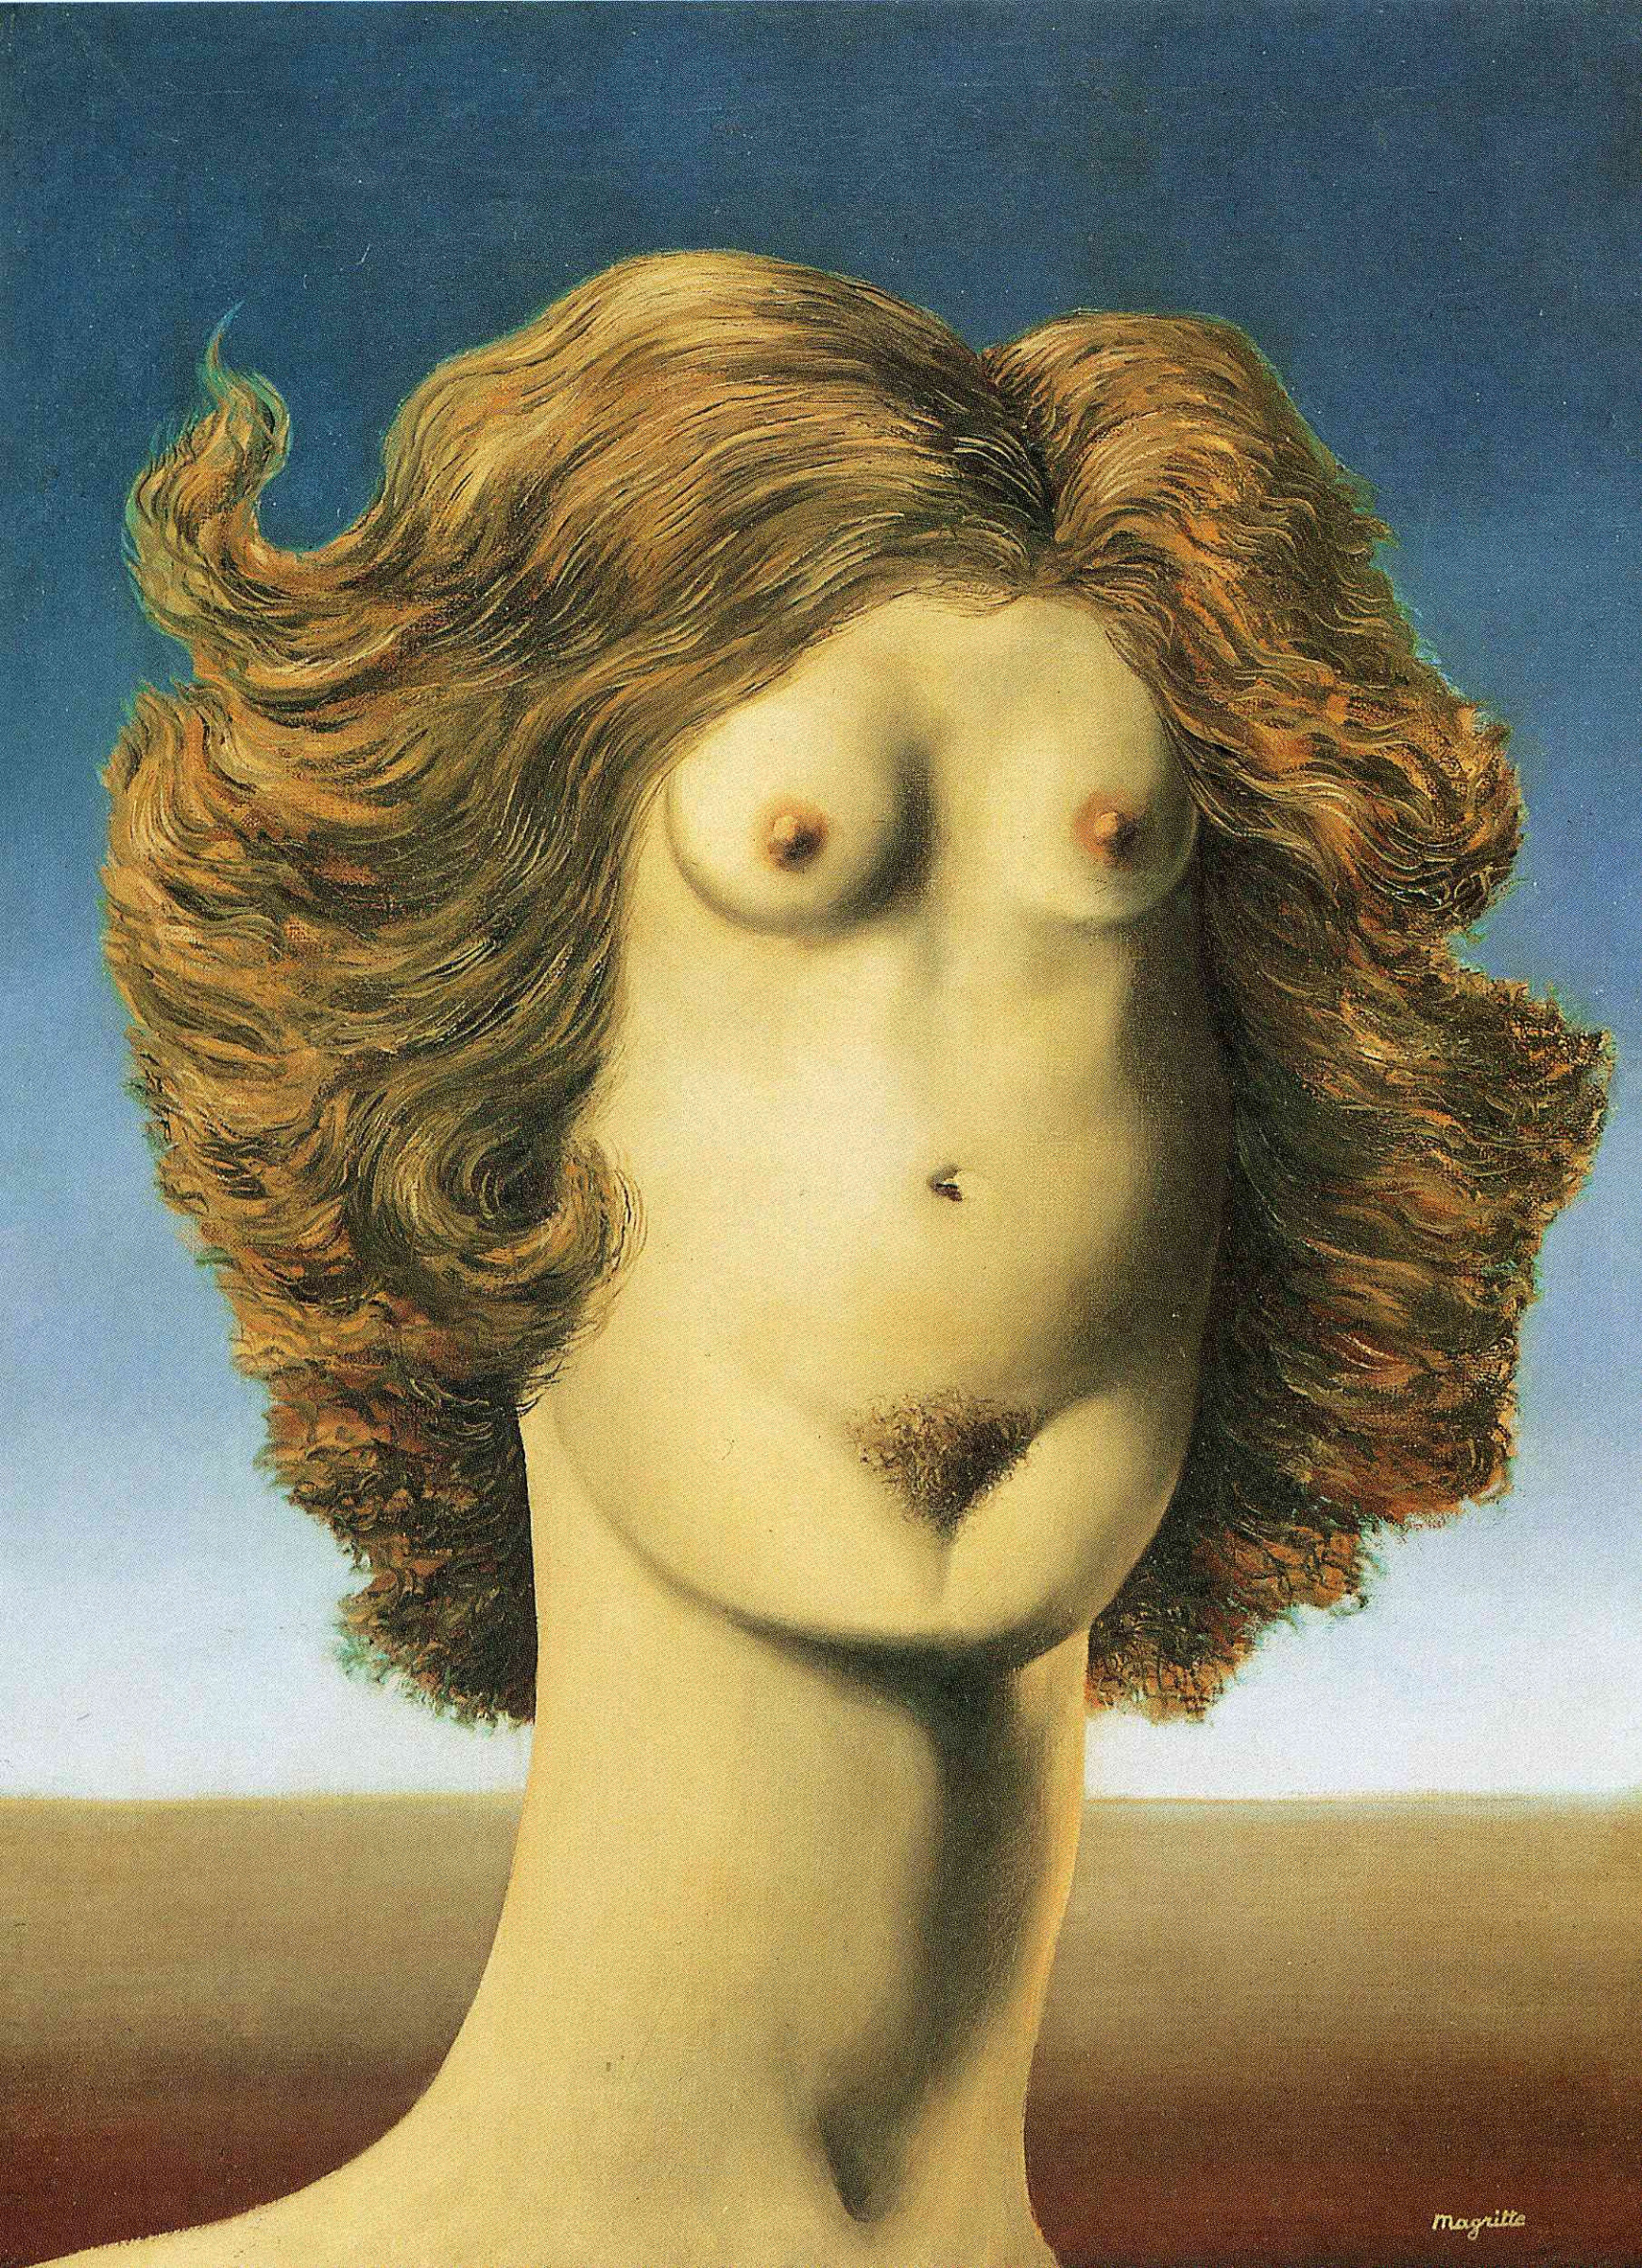 Le Viol (The Rape) By René Magritte